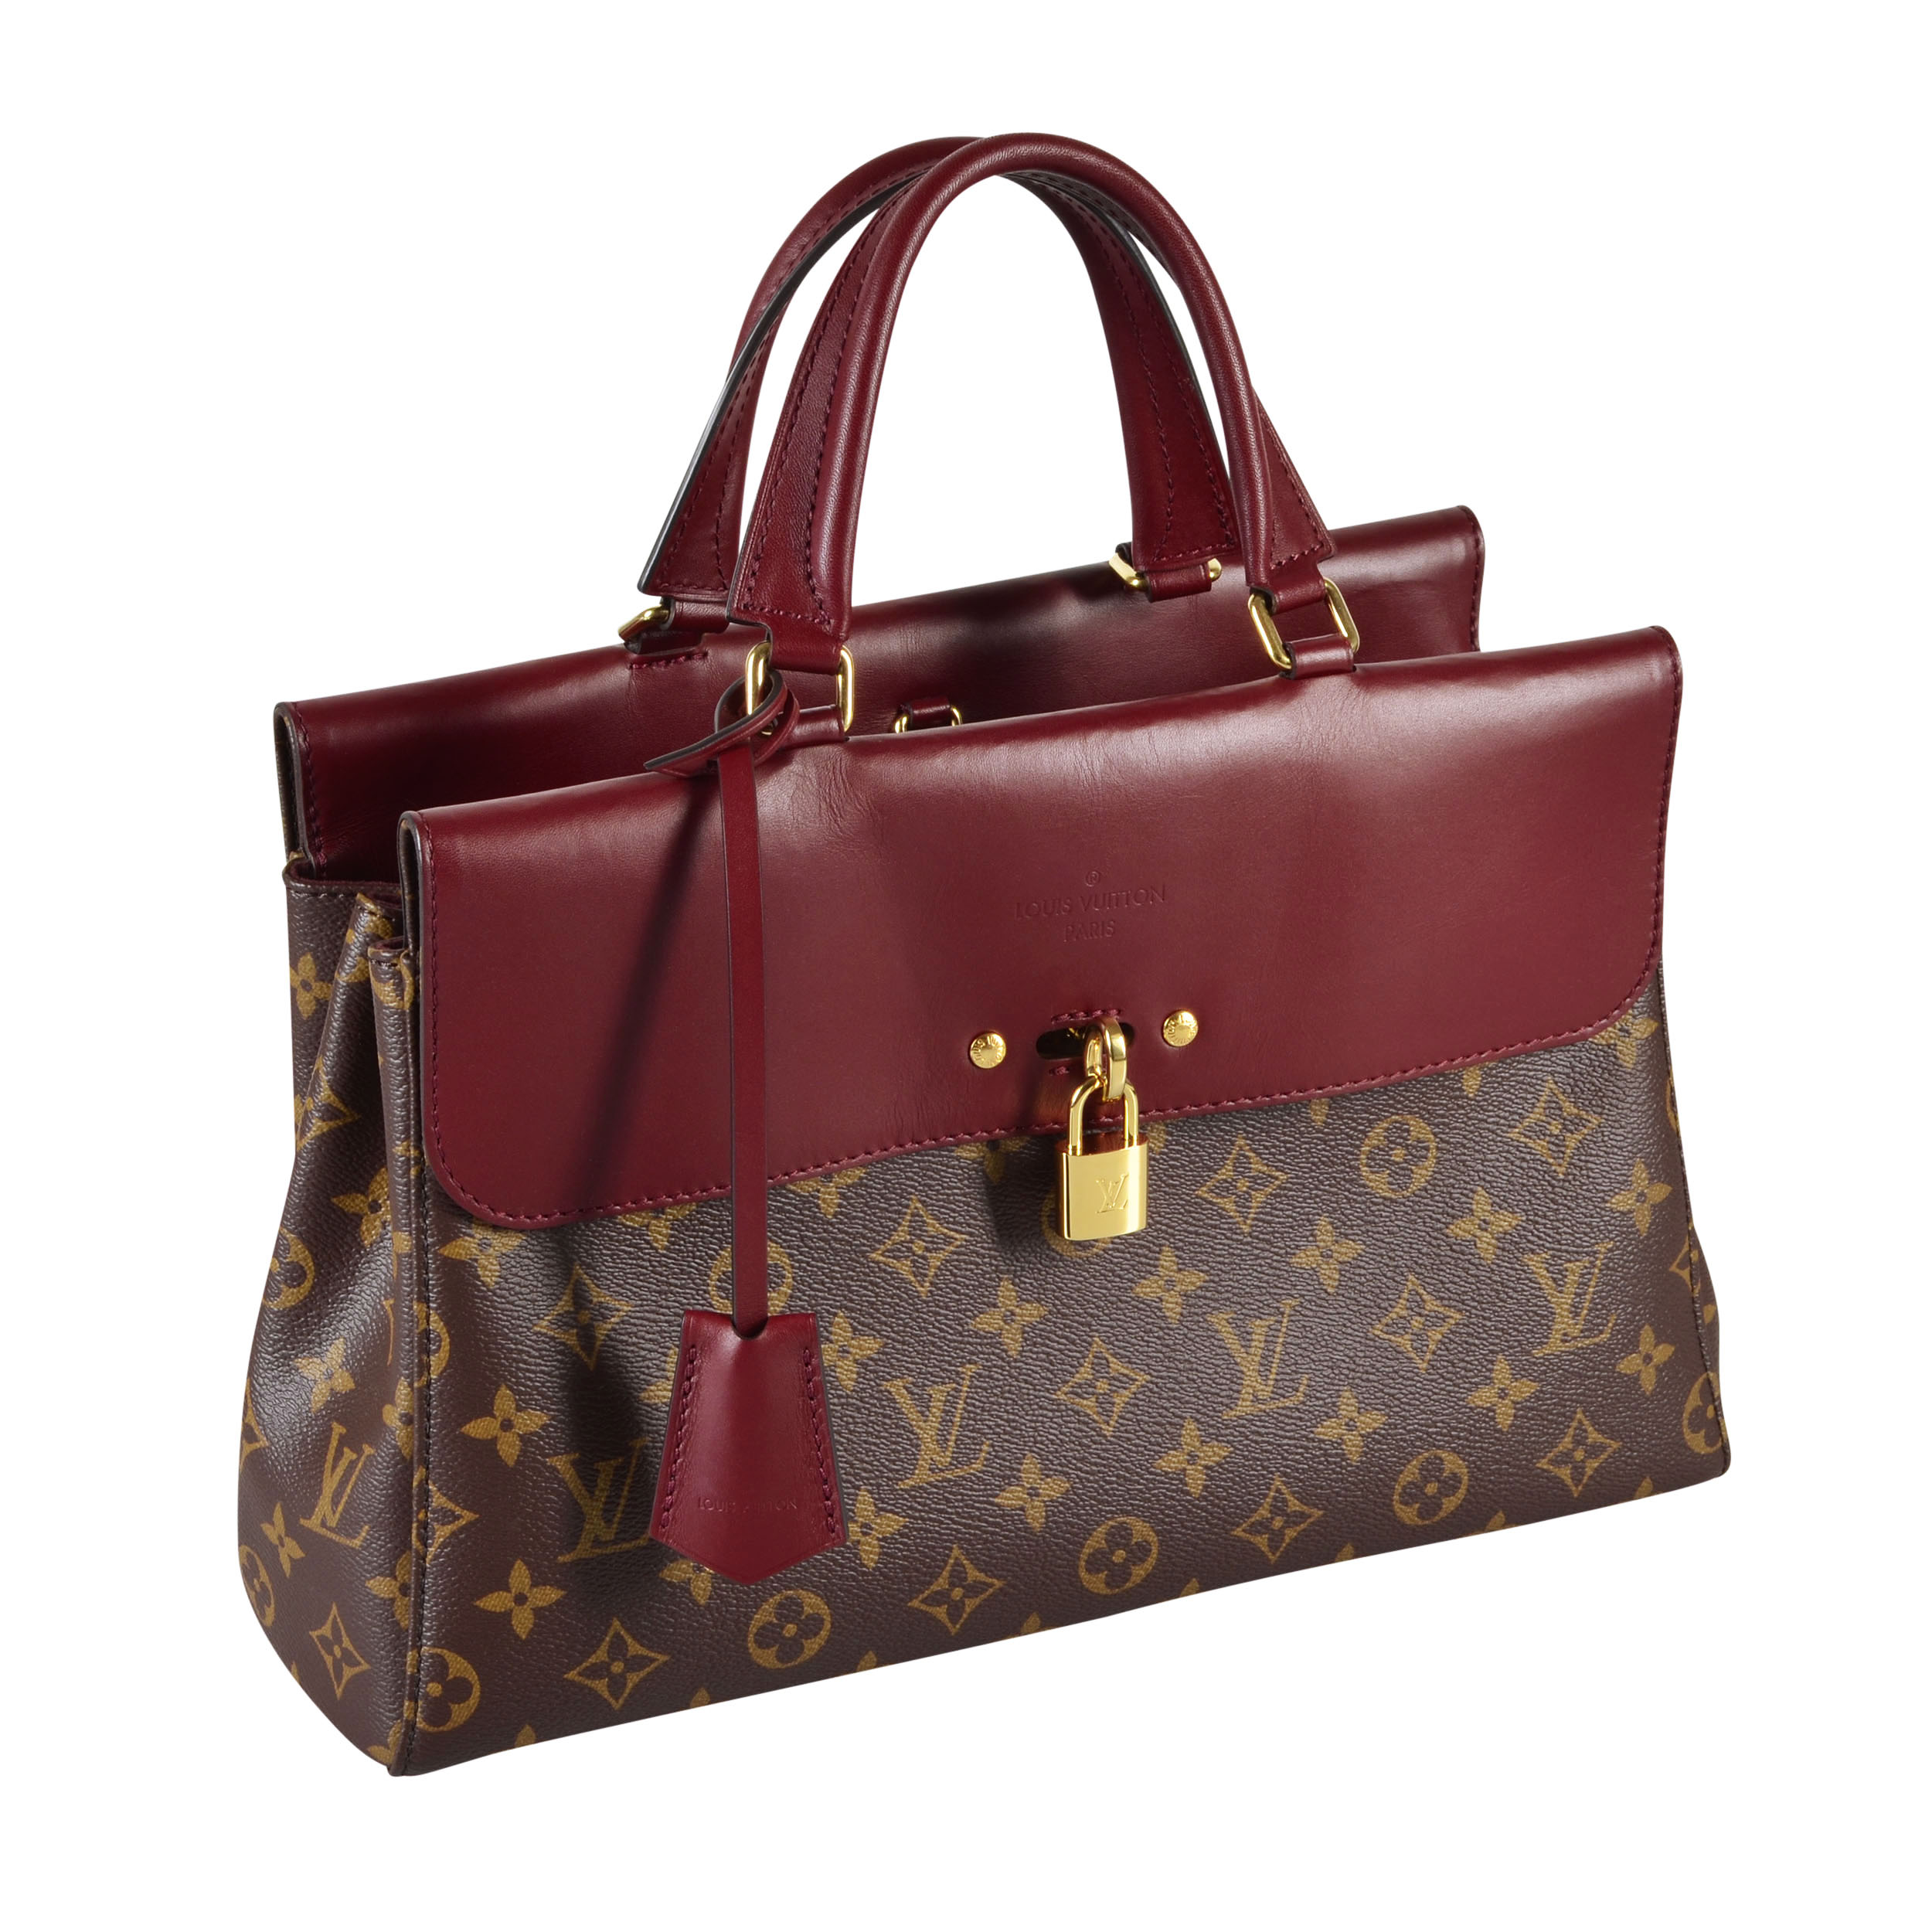 Louis Vuitton Handtasche Stockfoto und mehr Bilder von Louis